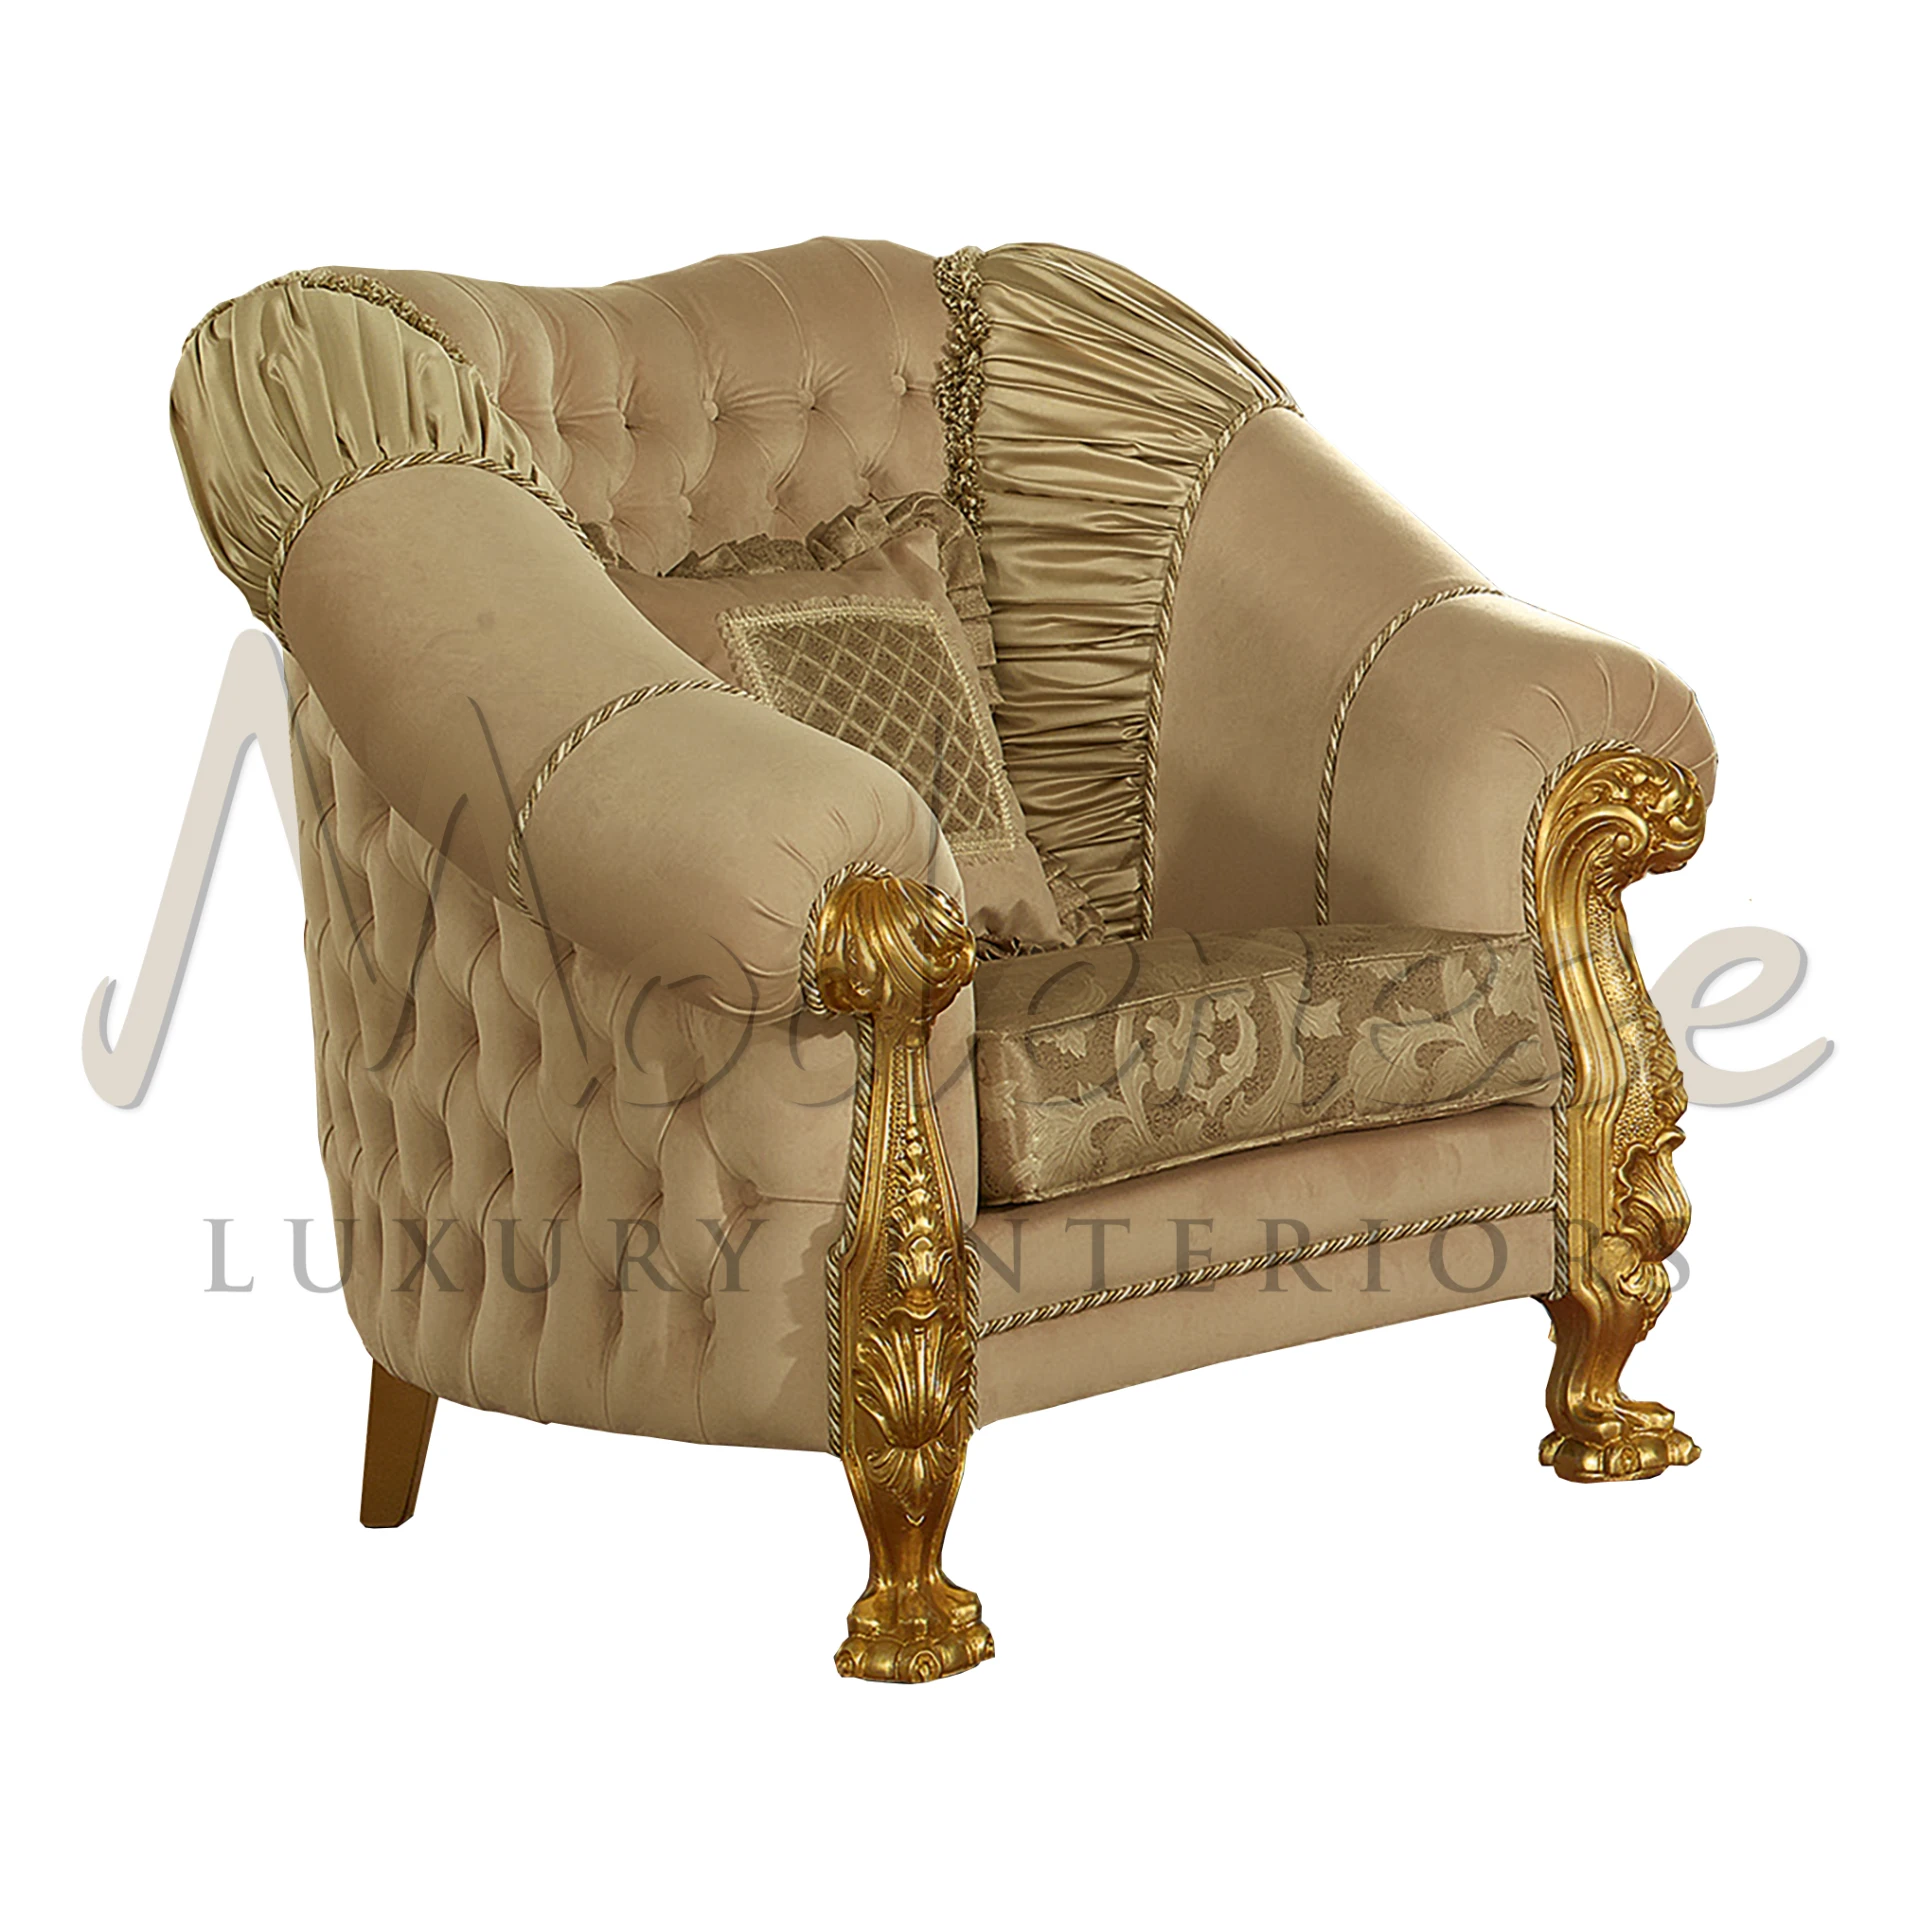 Ornate Gilded Throne Chair with Plush Velvet Upholstery